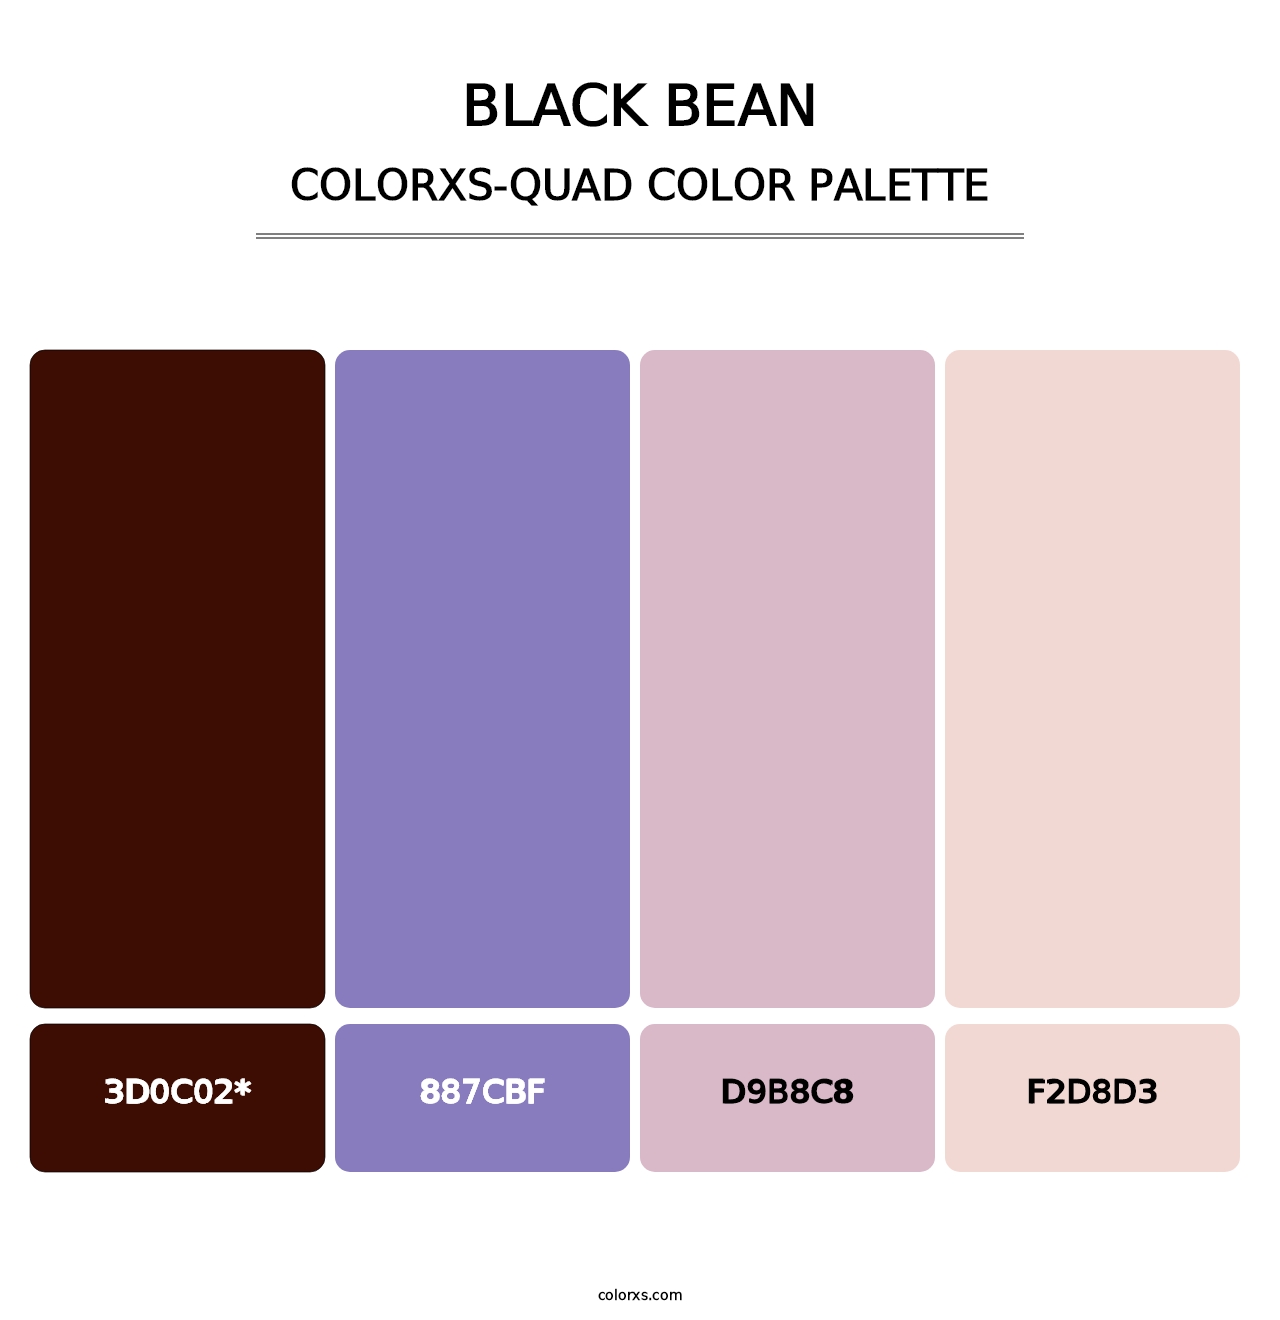 Black Bean - Colorxs Quad Palette